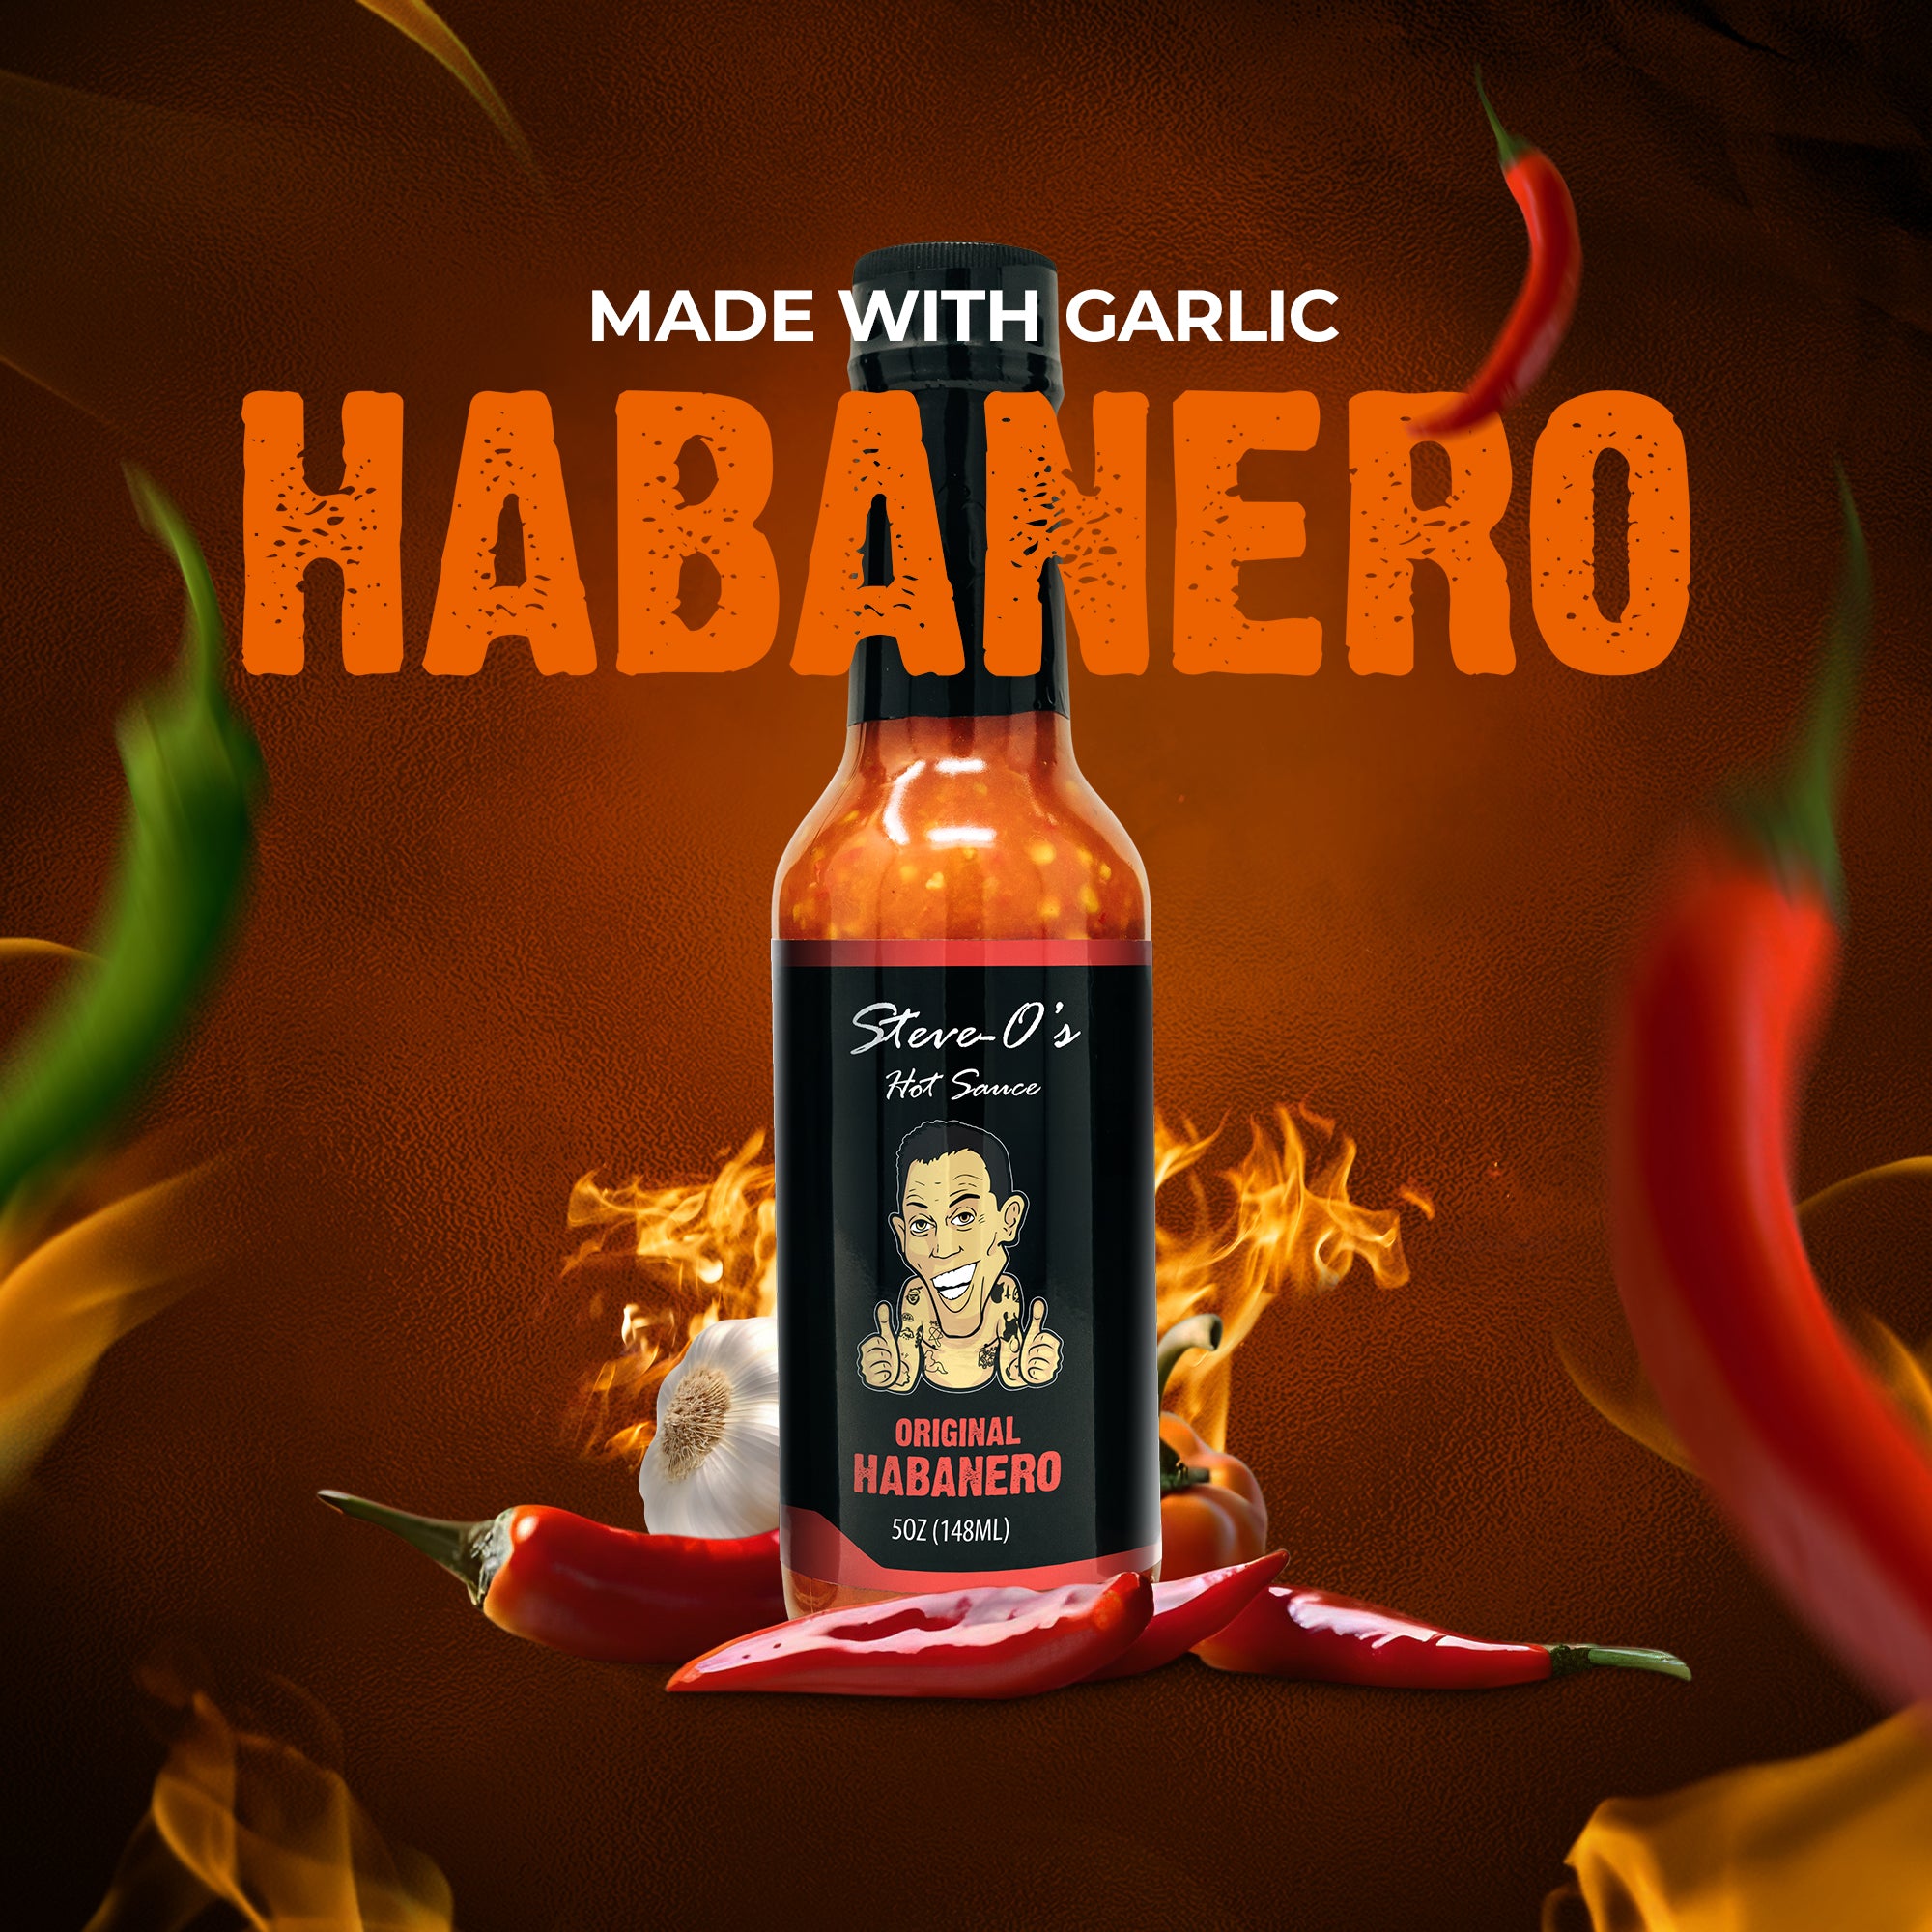 Steve-O's Hot Sauce (Habanero)